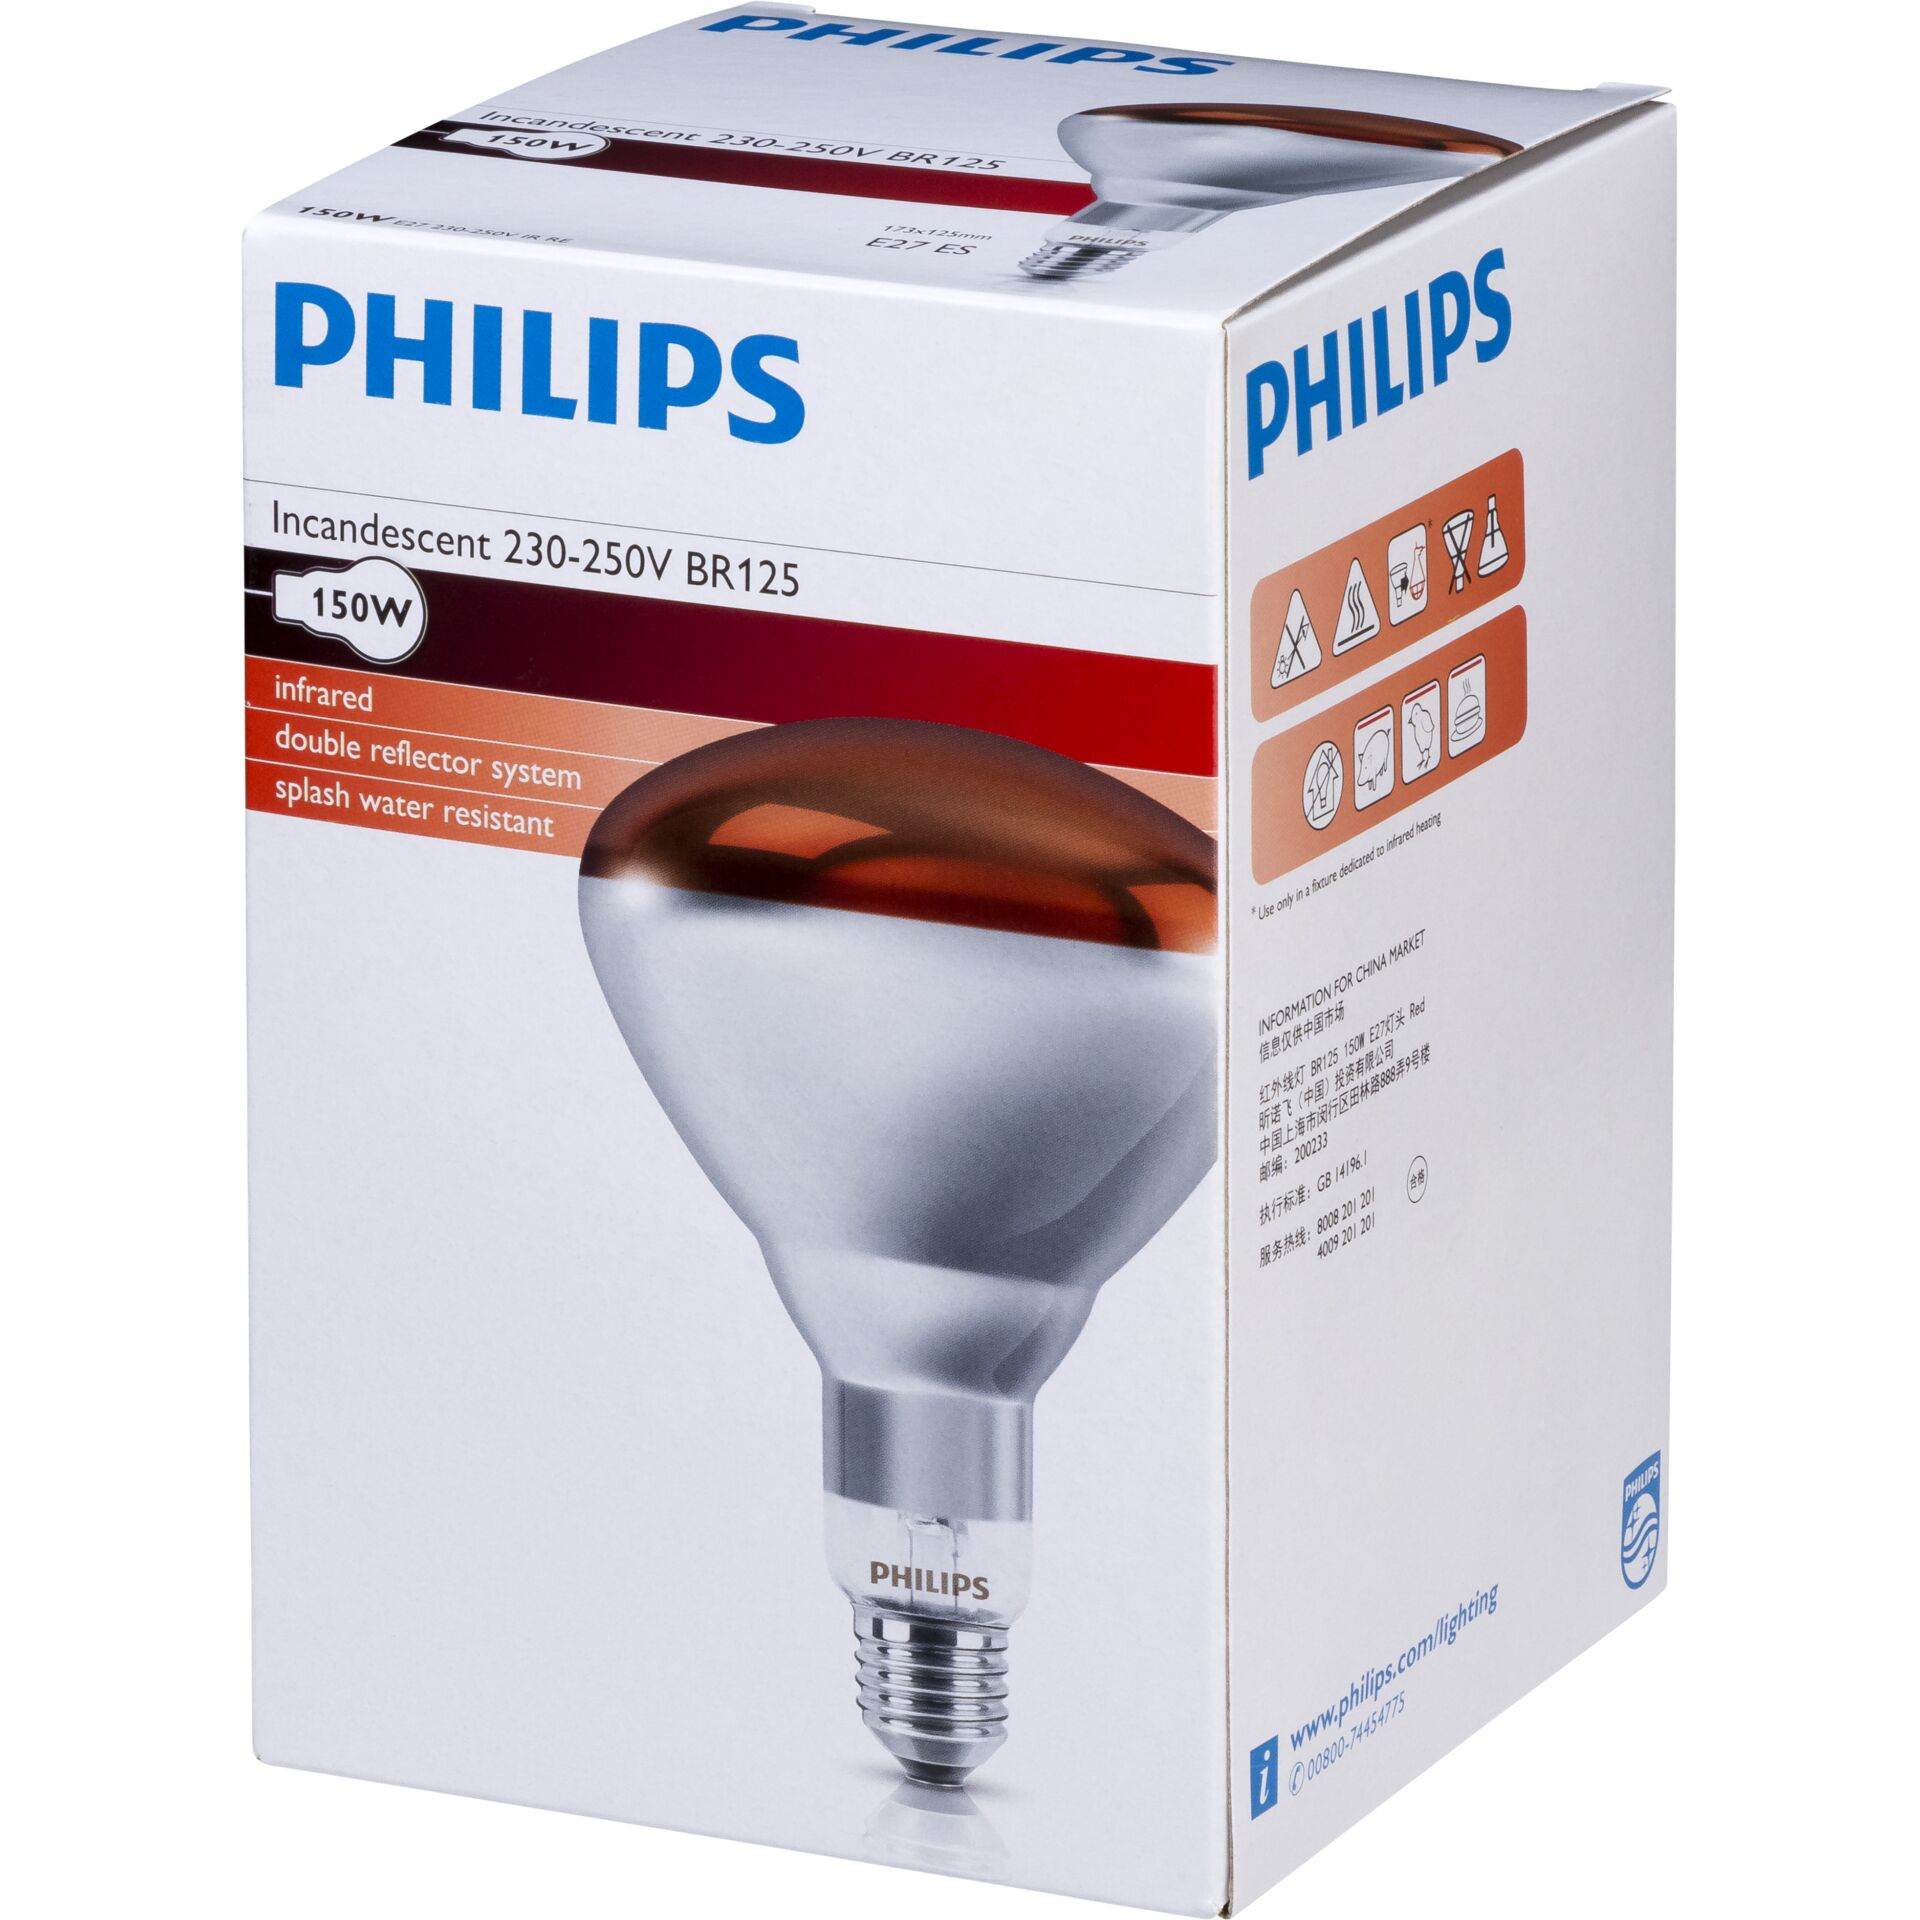 Philips lampada infrar. BR125 IR 150W E27 230-250V rosso